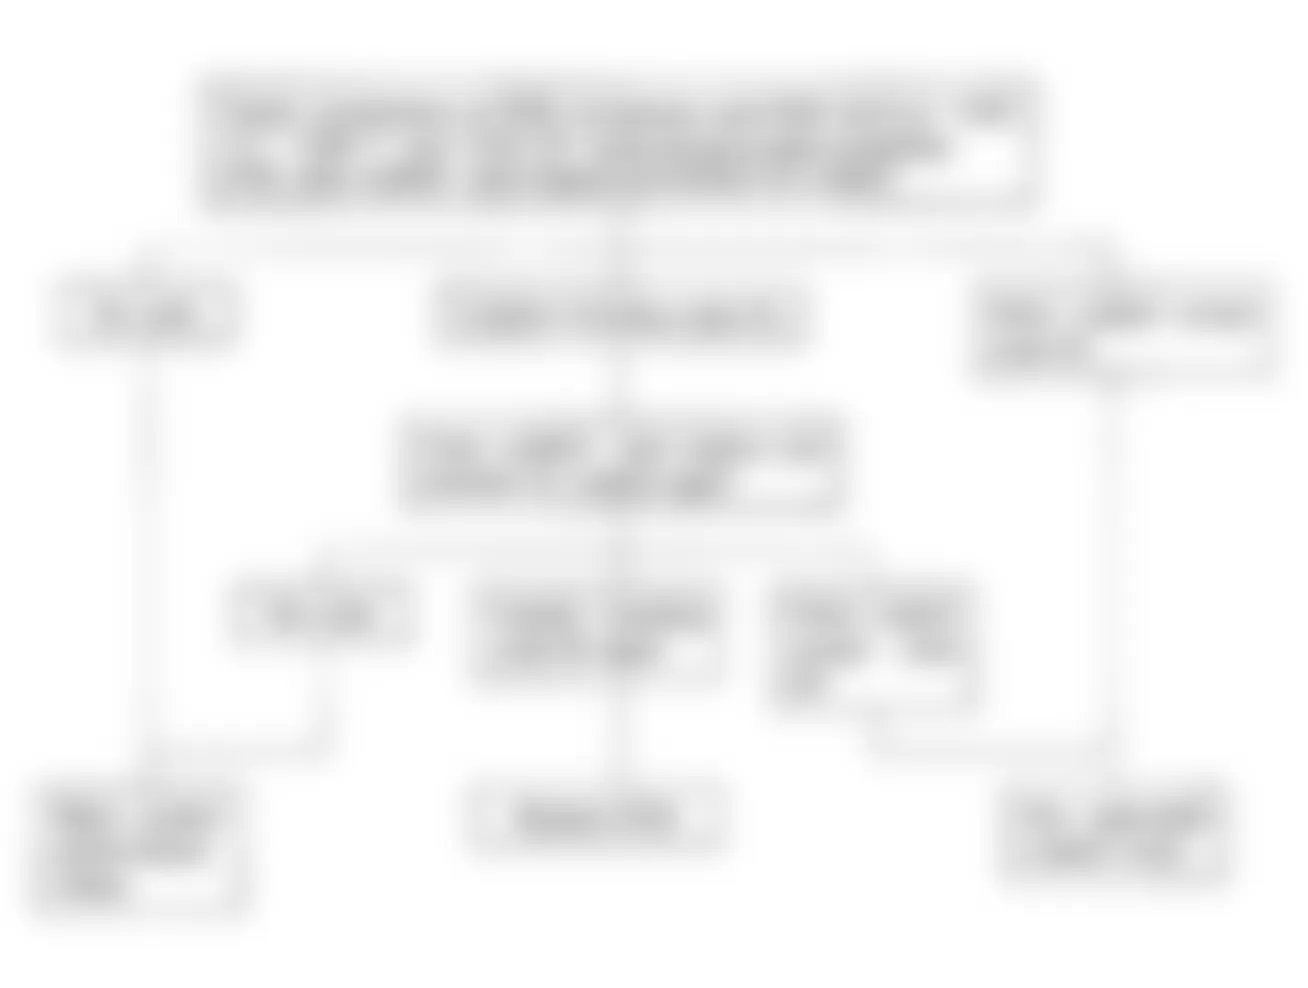 Isuzu Amigo S 1991 - Component Locations -  Code No. 55 Flow Chart, Faulty ECM